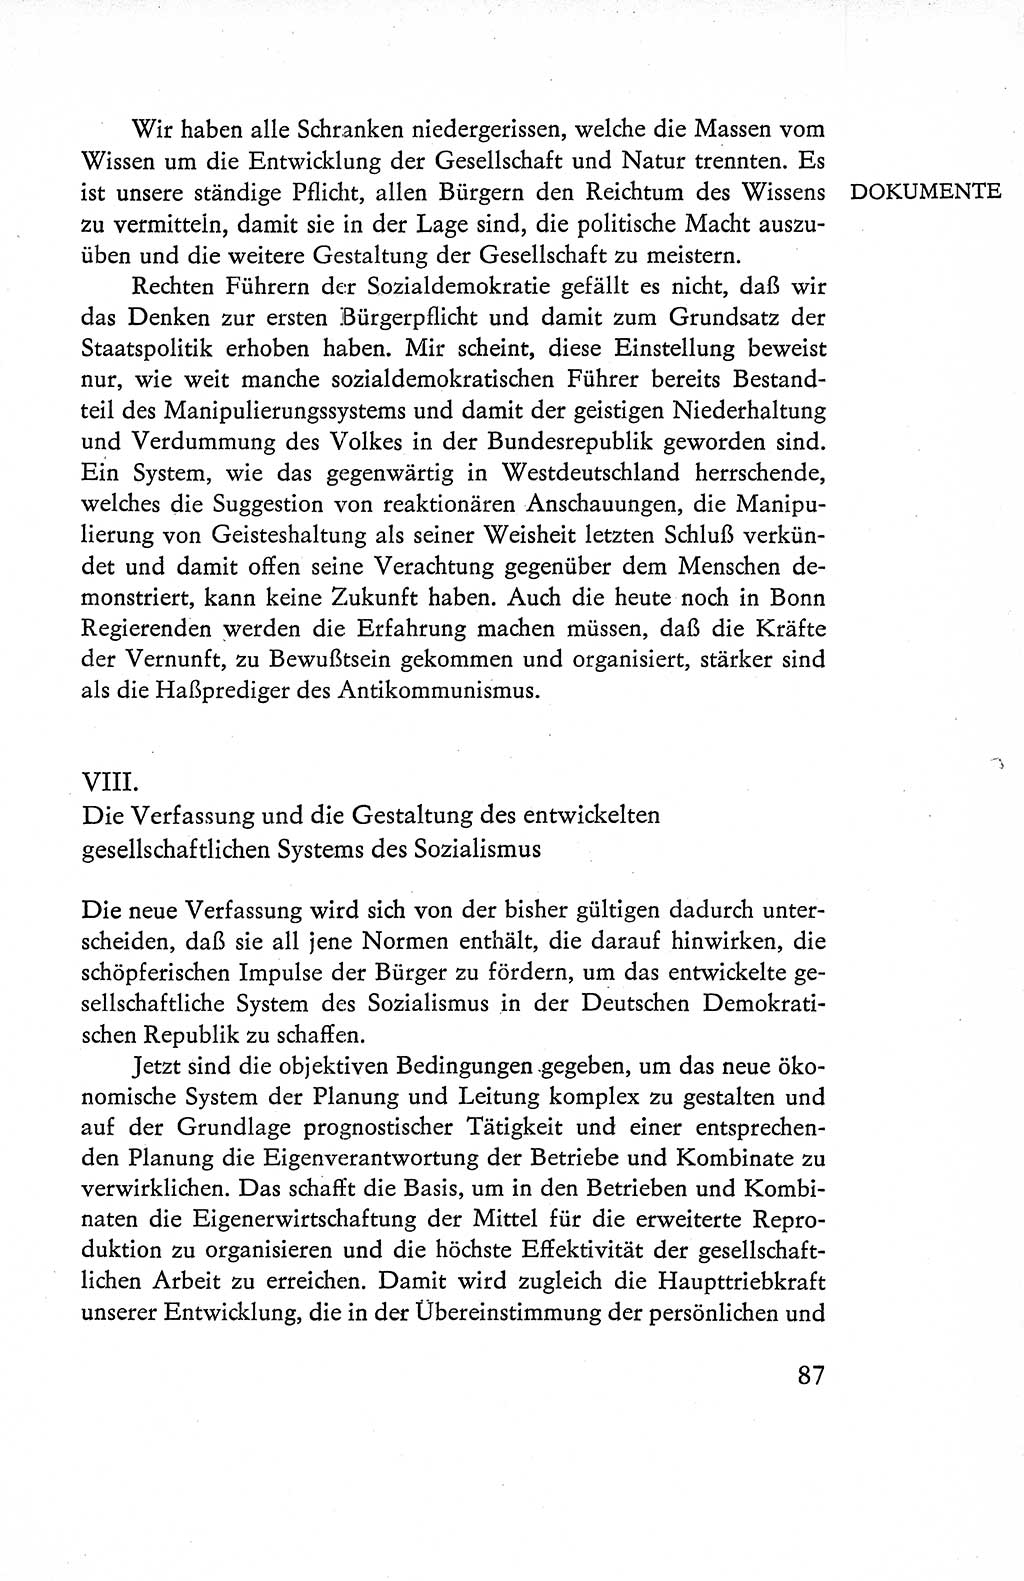 Verfassung der Deutschen Demokratischen Republik (DDR), Dokumente, Kommentar 1969, Band 1, Seite 87 (Verf. DDR Dok. Komm. 1969, Bd. 1, S. 87)